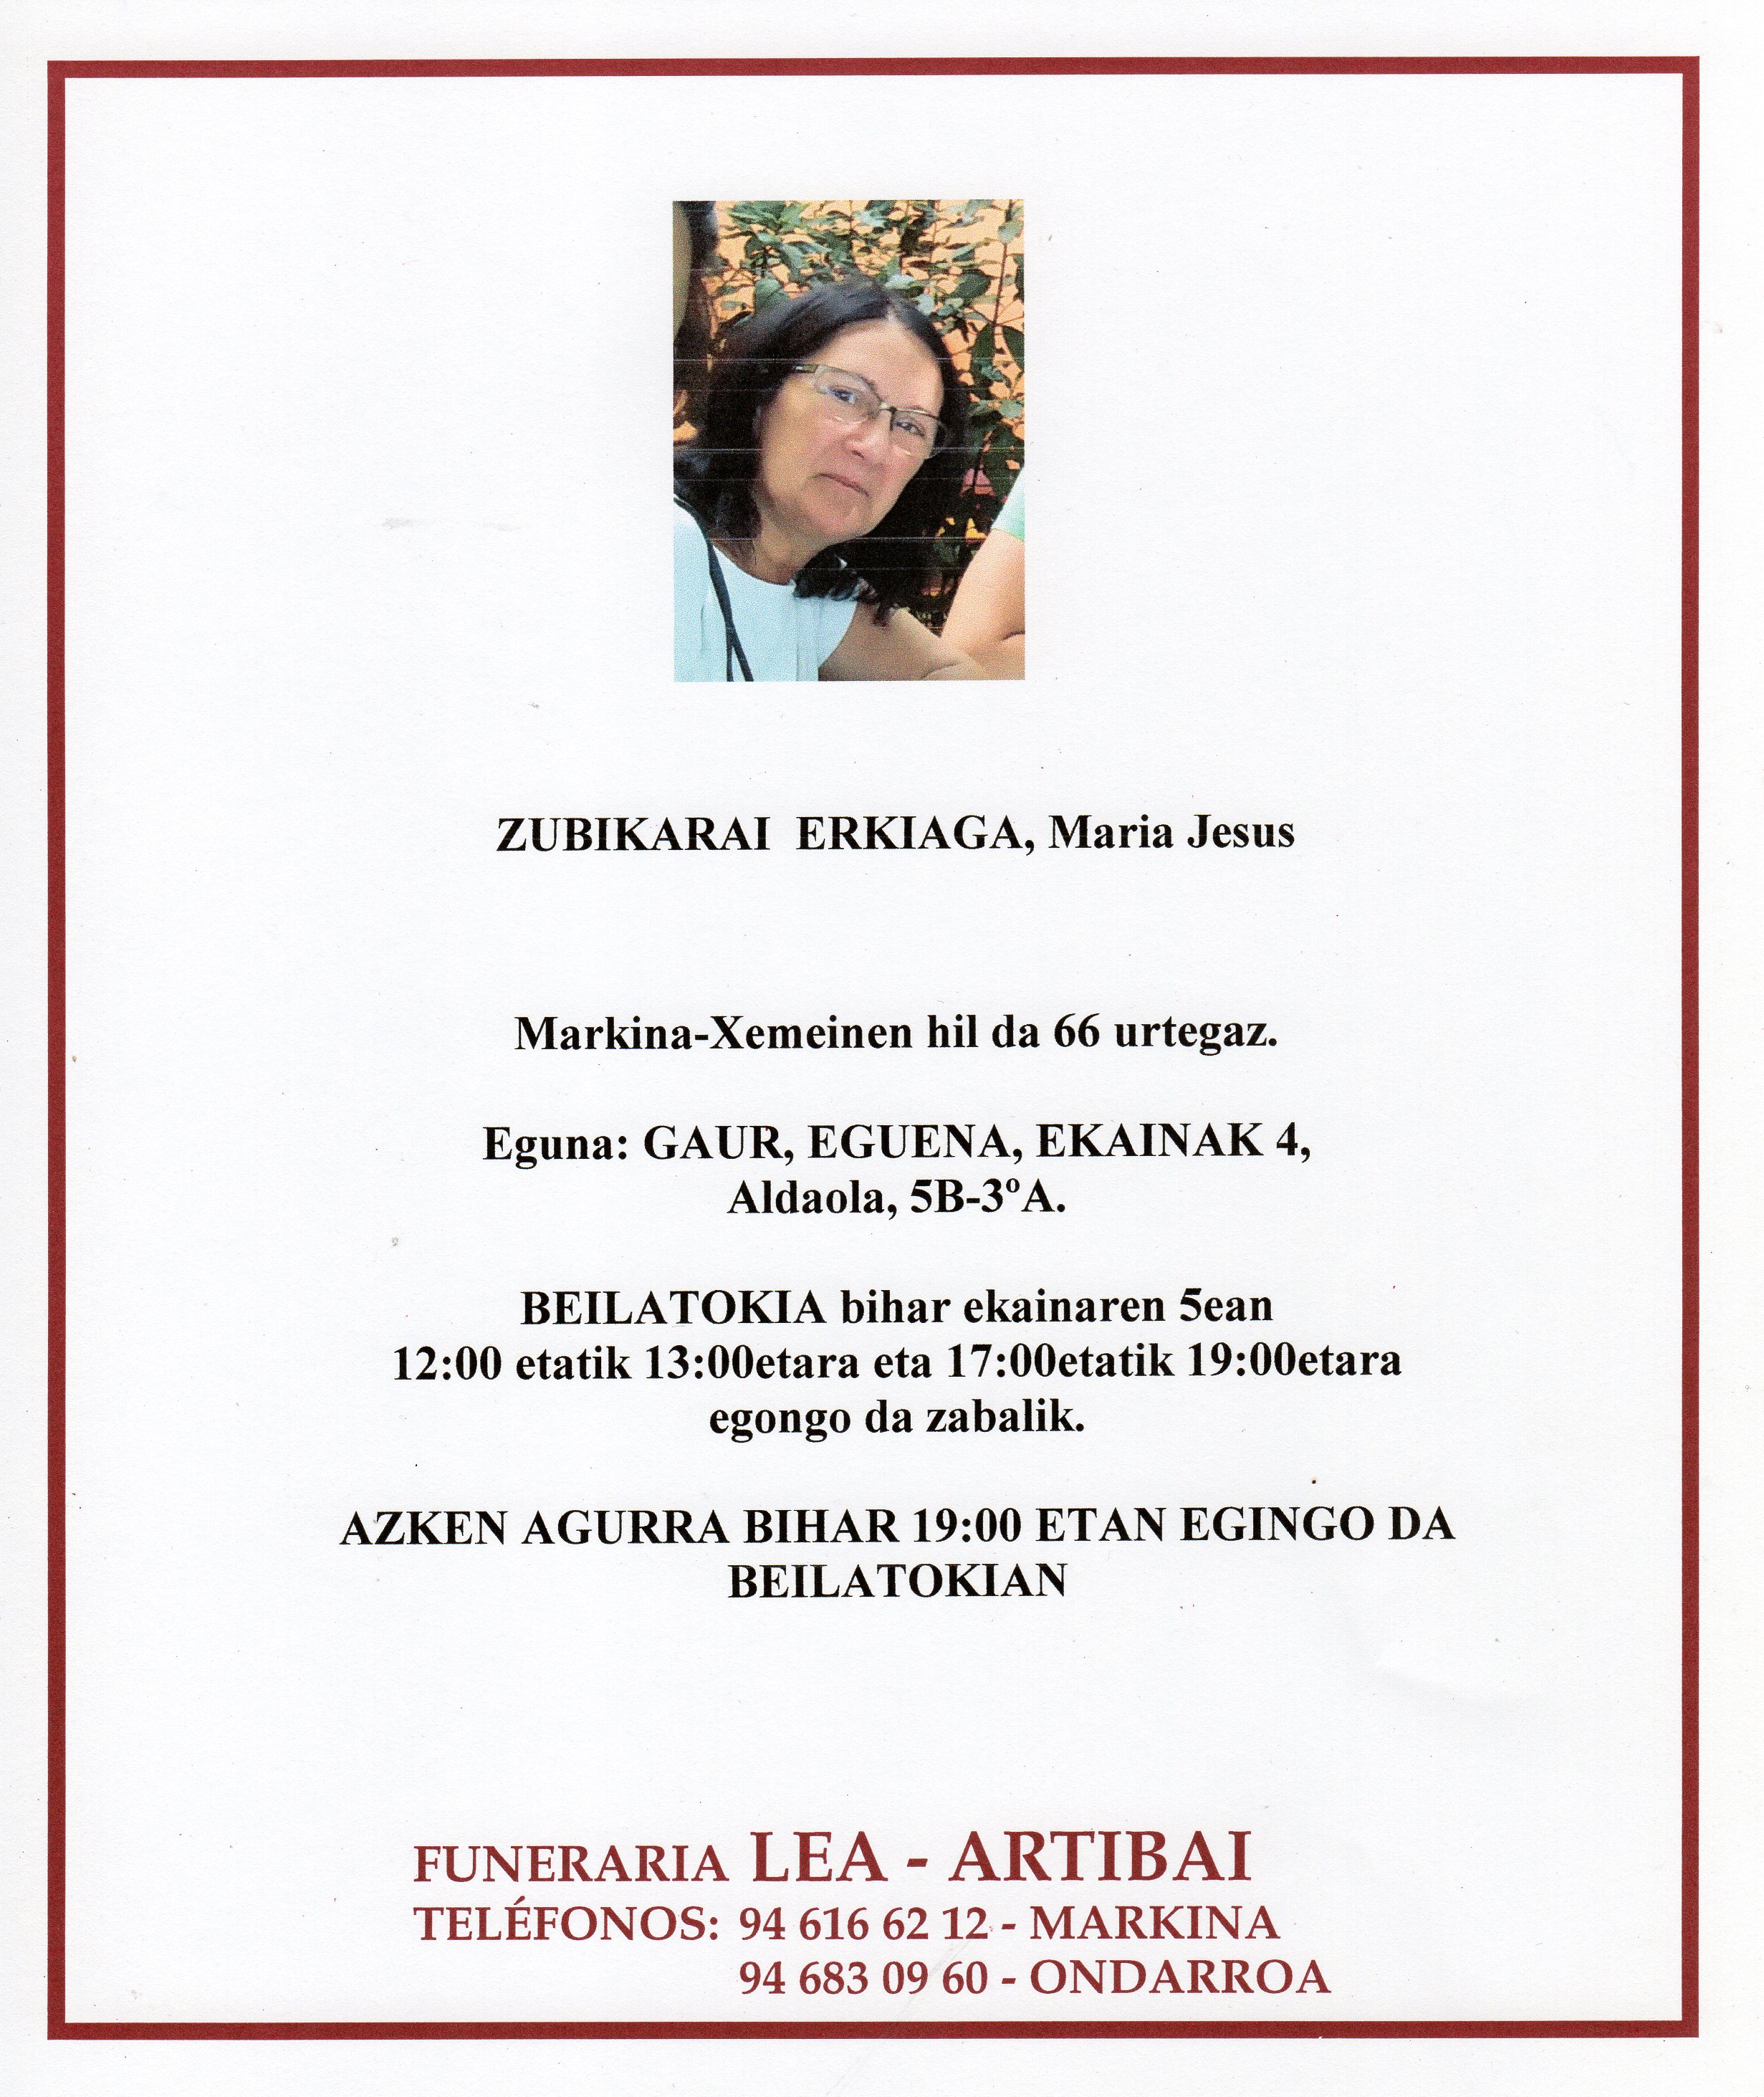 Maria Jesus Zubikarai Erkiaga20200604_10415243